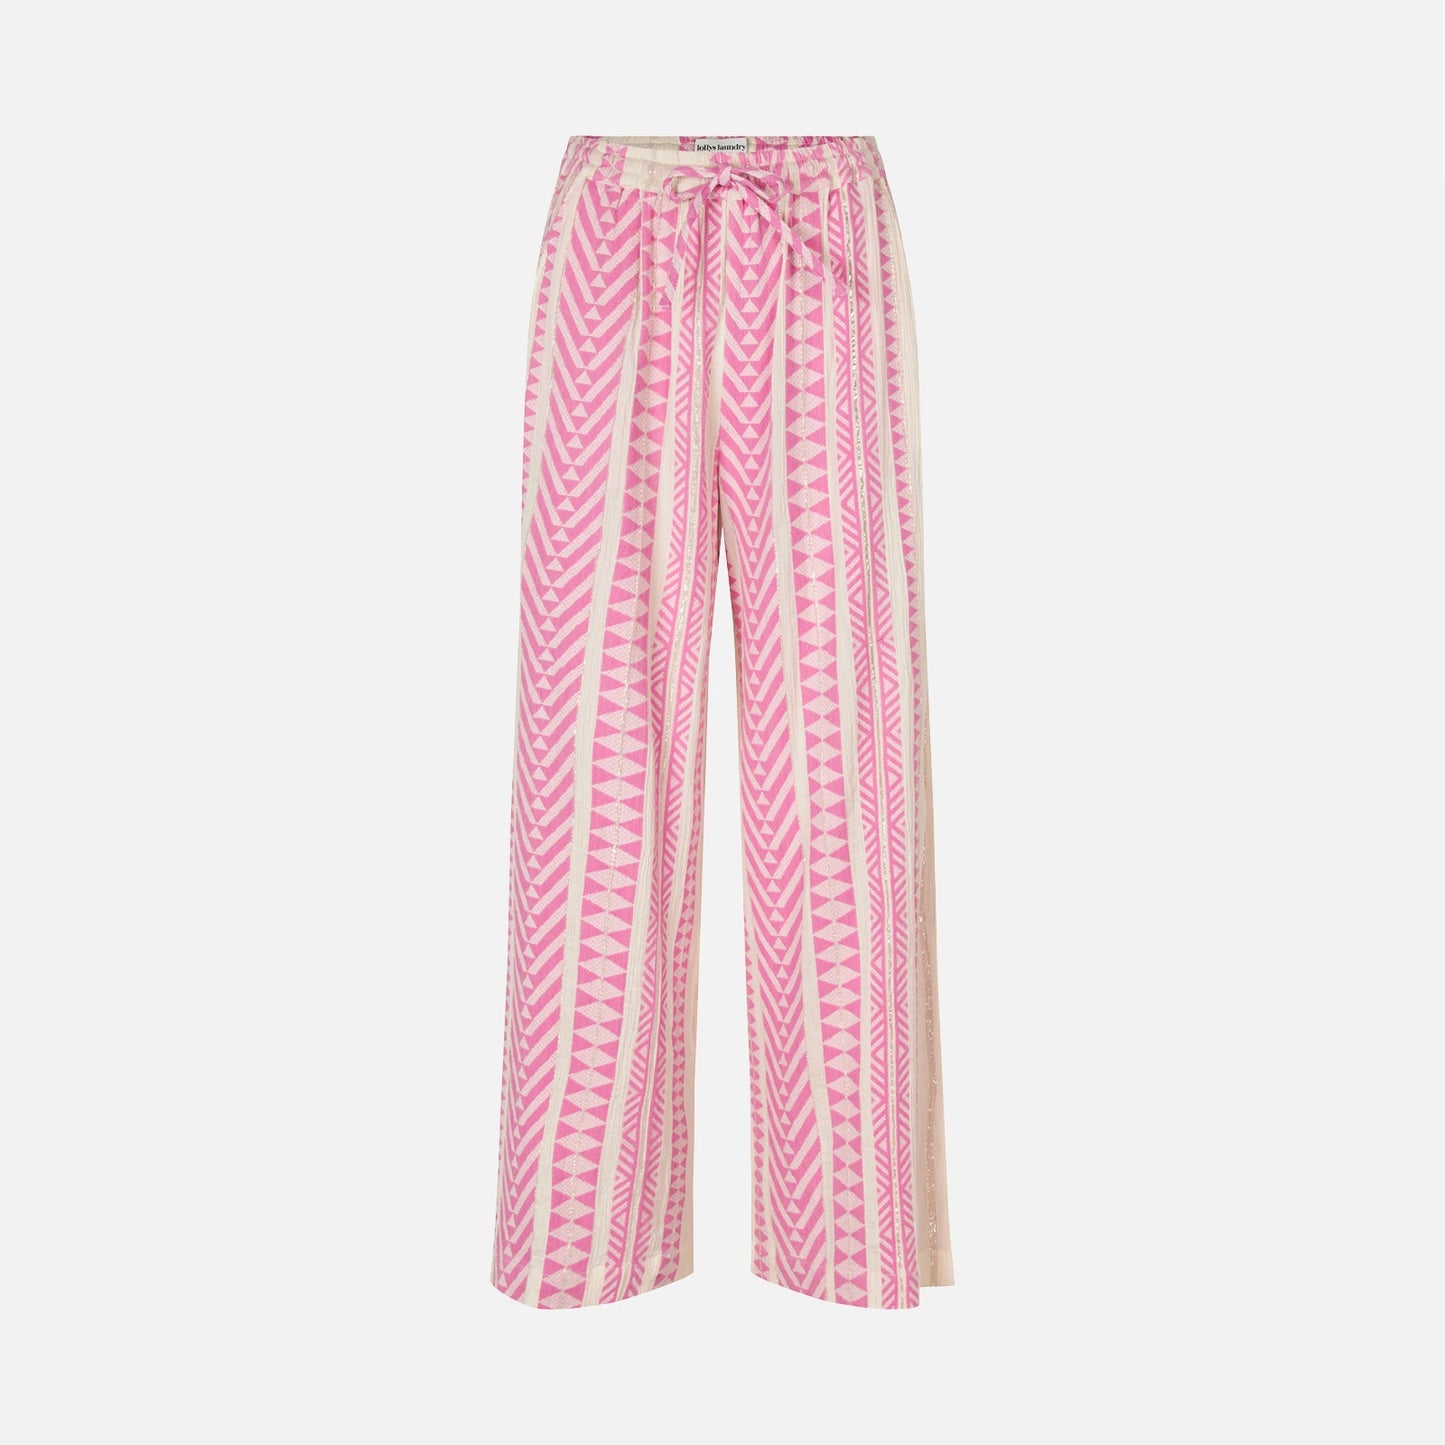 LiamLL bukser i pink fra Lolly's Laundry